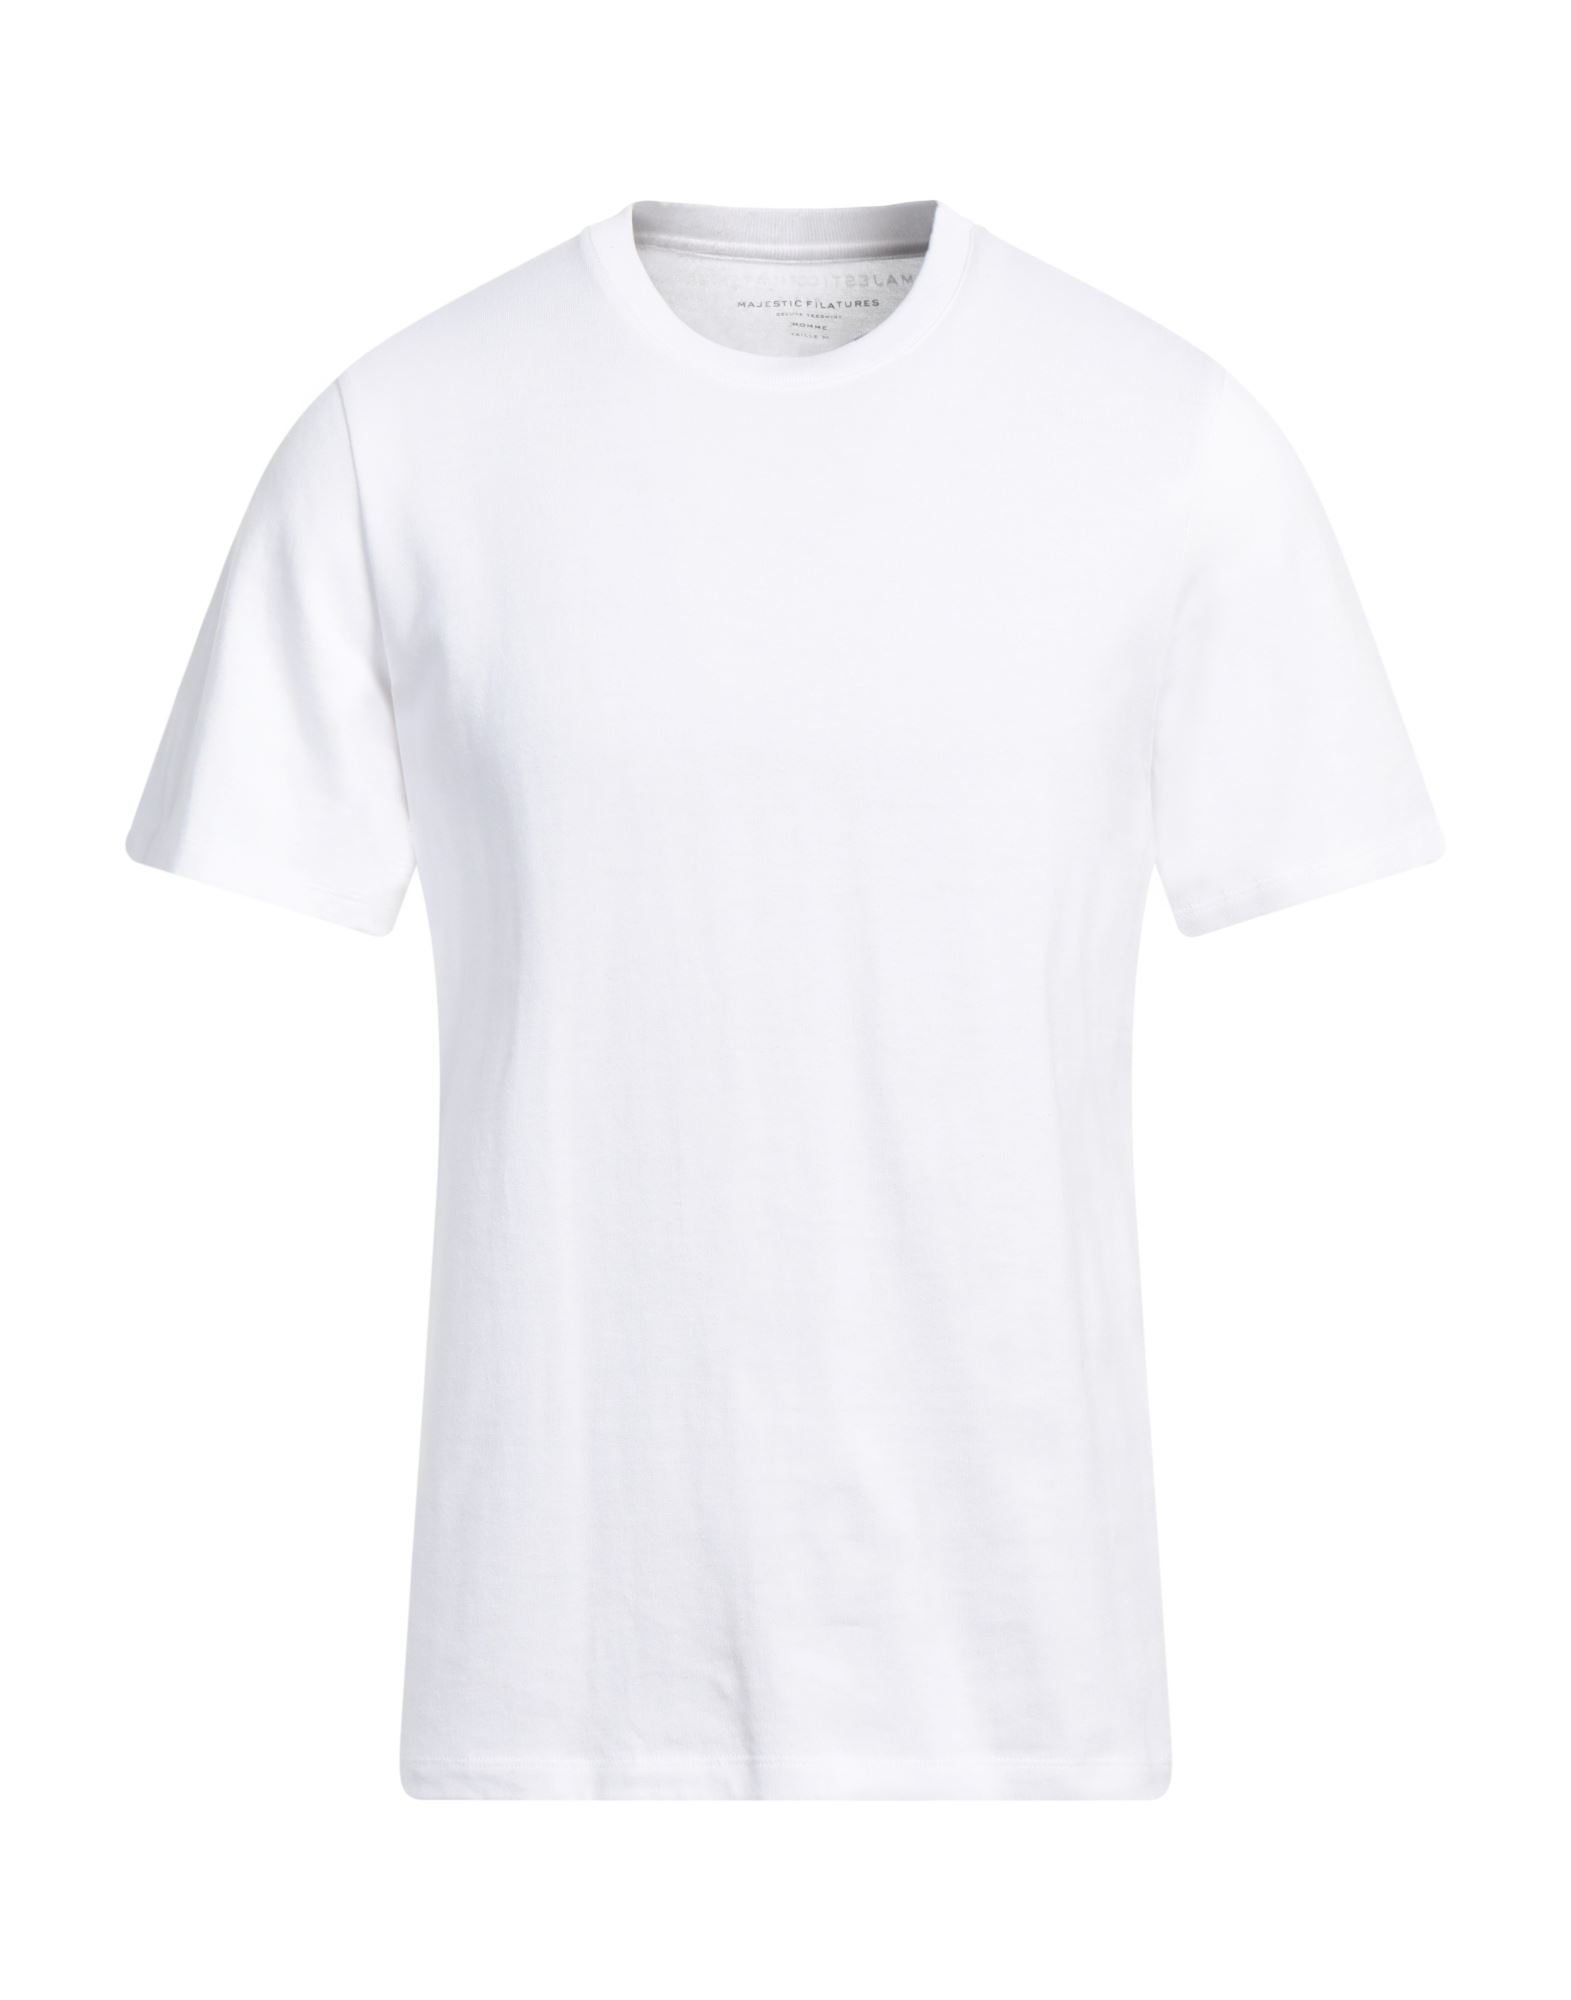 MAJESTIC FILATURES T-shirts Herren Weiß von MAJESTIC FILATURES